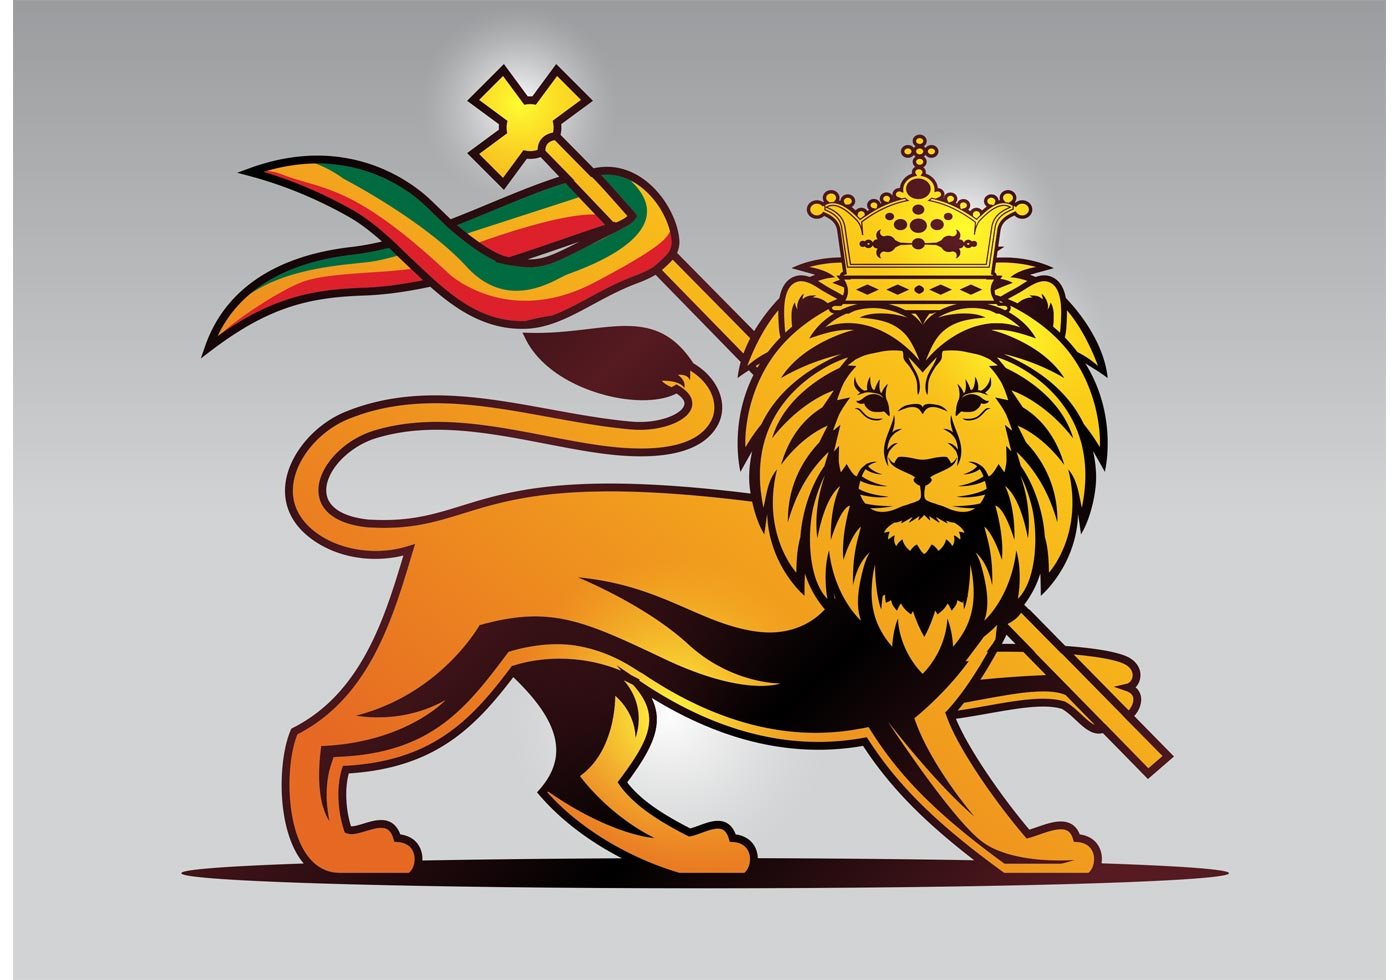 Лев символ герба. Lion of Judah. Флаг Эфиопии со львом. Герб со львом.